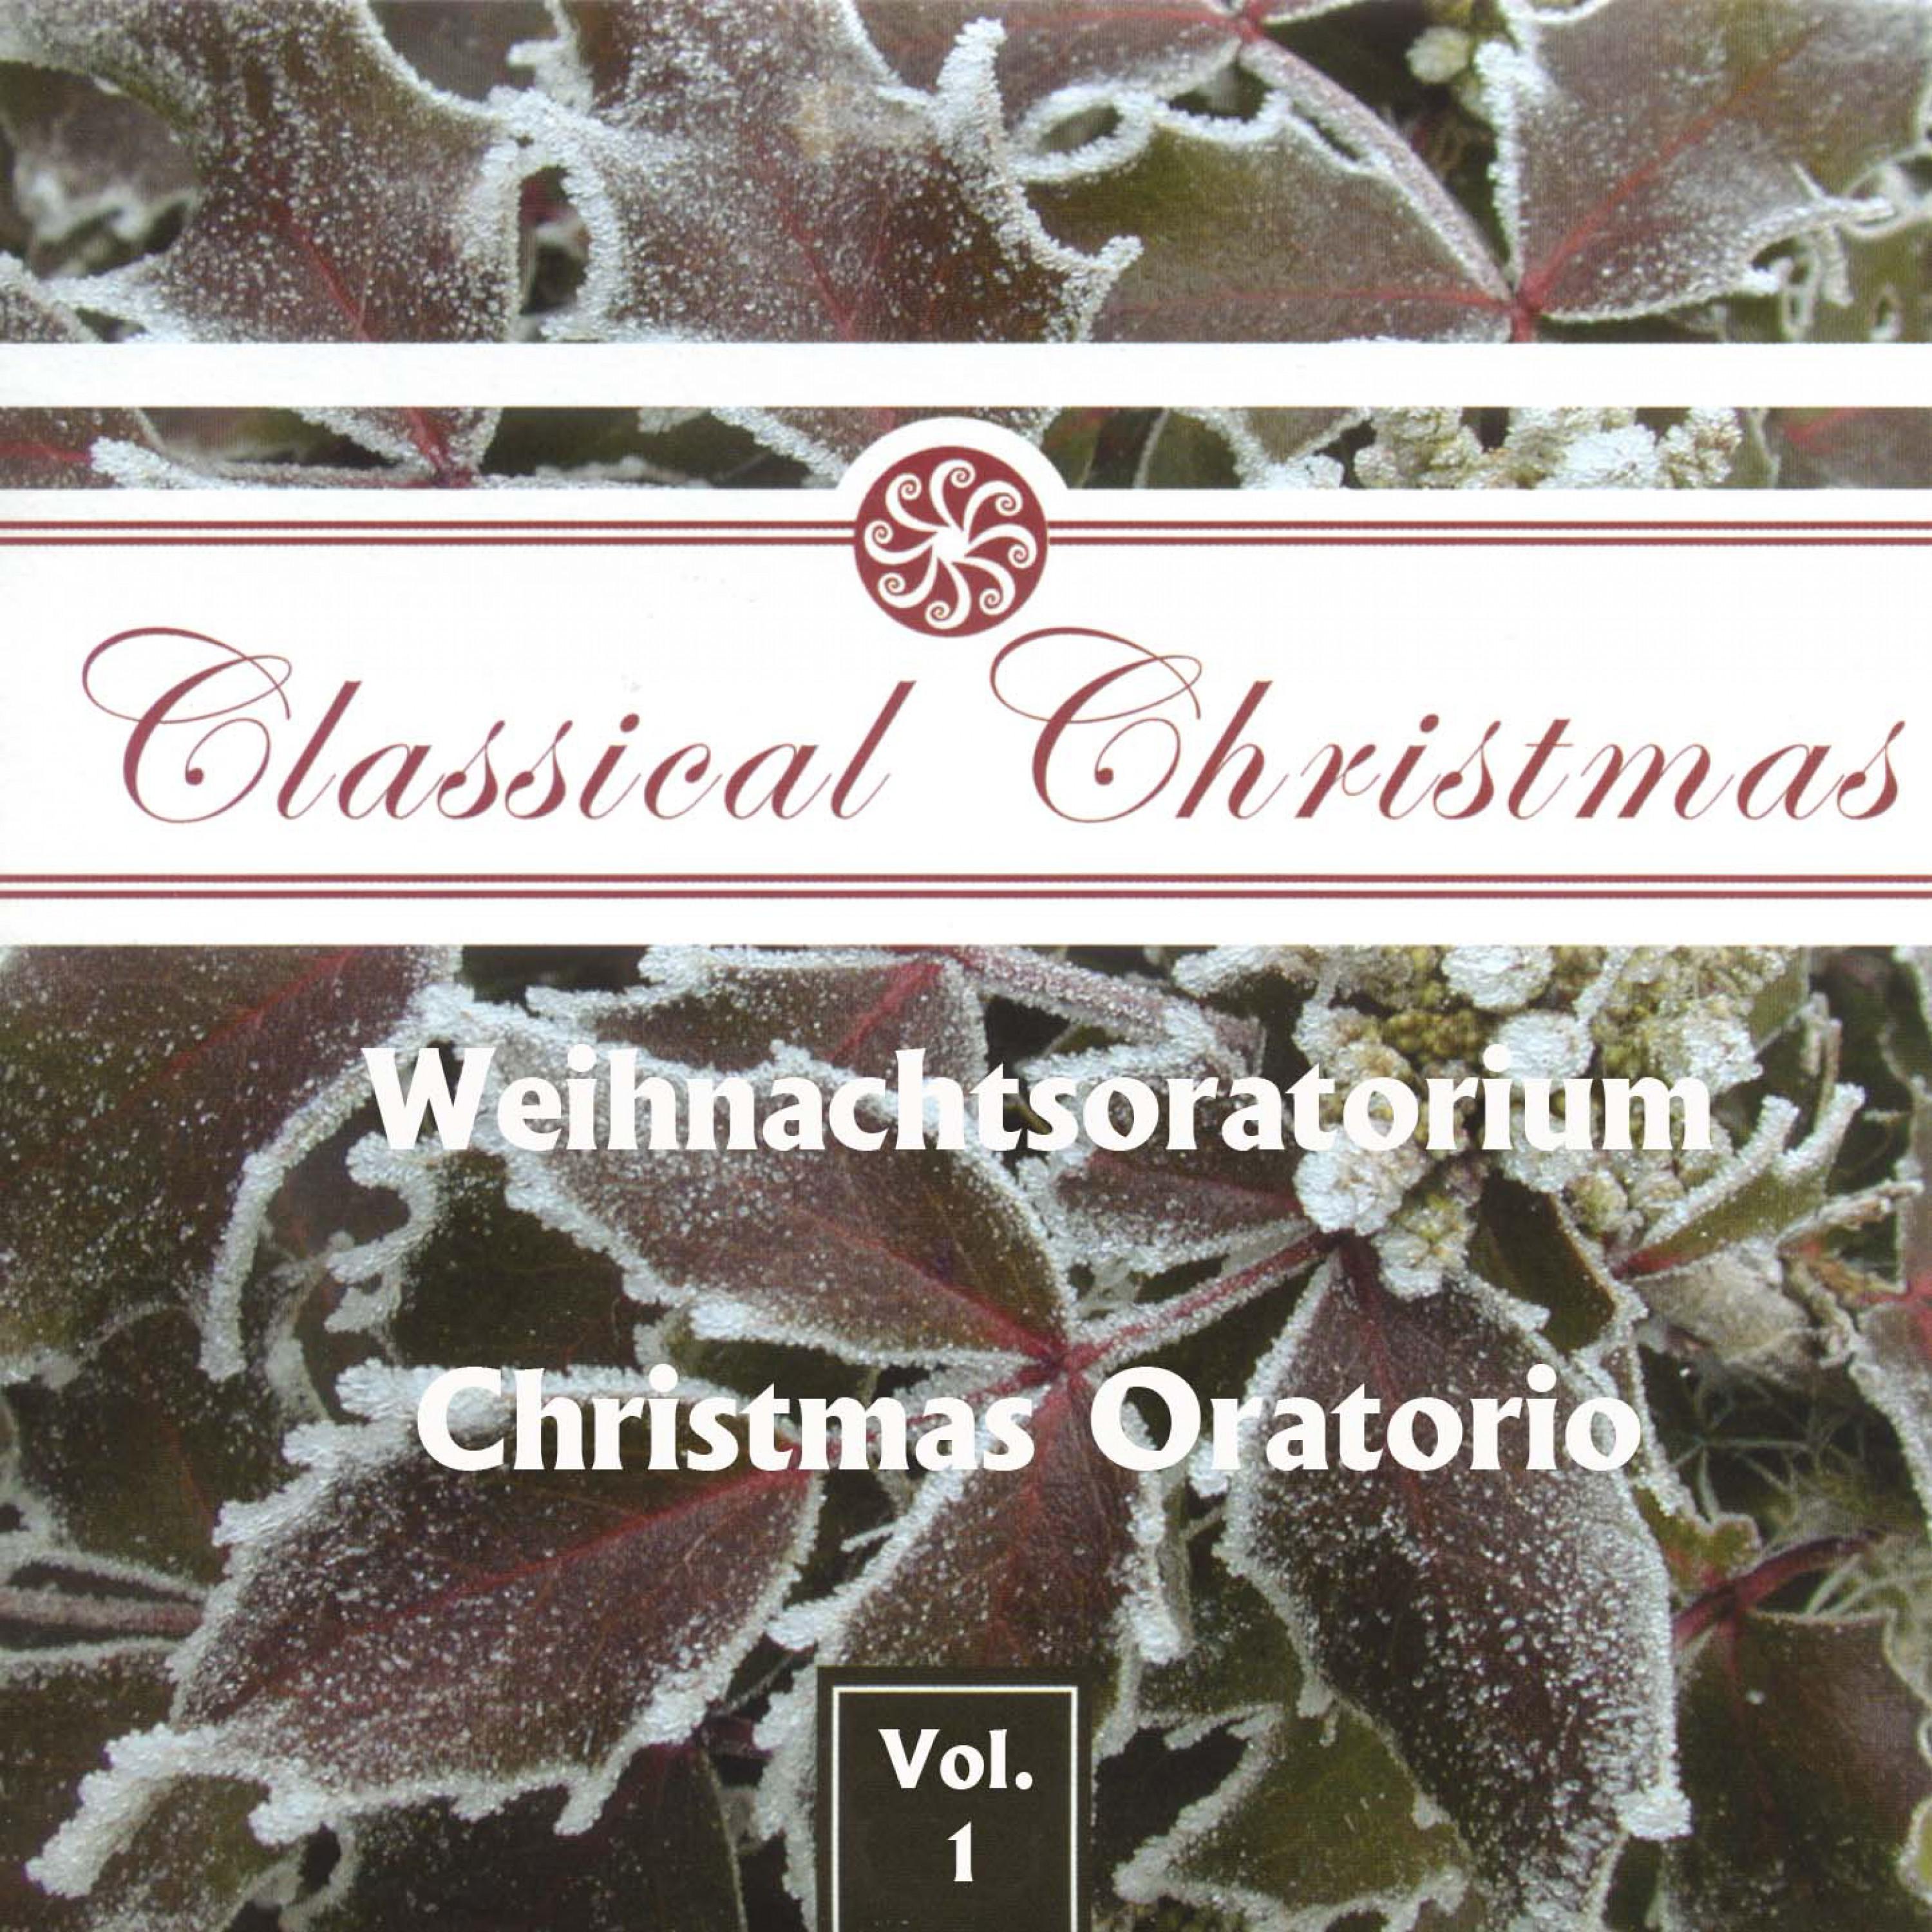 Johann Sebastian Bach: "Weihnachts Oratorium